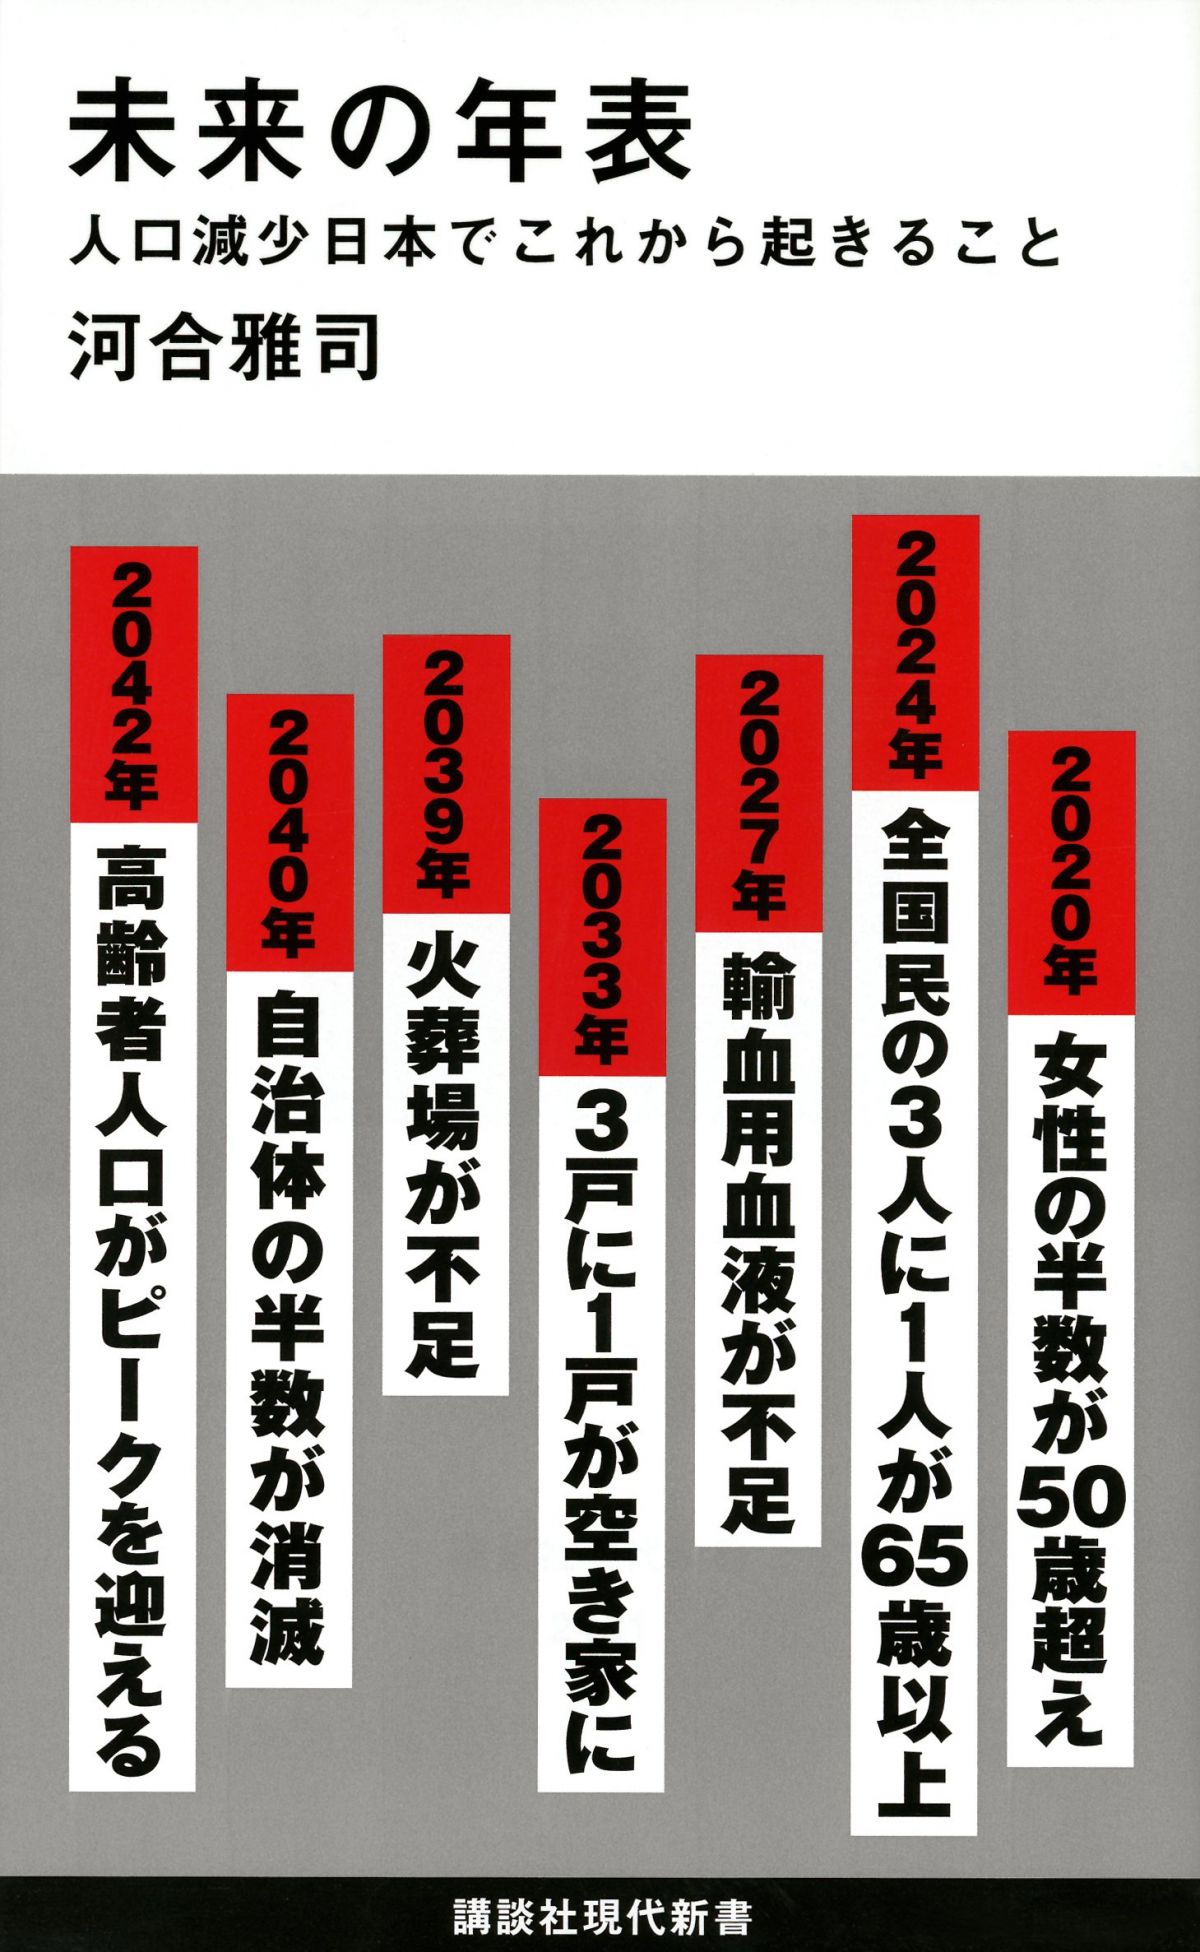 日本中を席巻 ケント ギルバートの啓蒙本はなぜ売れている 17年上半期ベストセラー新書と下半期ヒット予測 1枚目 全5枚 ダ ヴィンチニュース